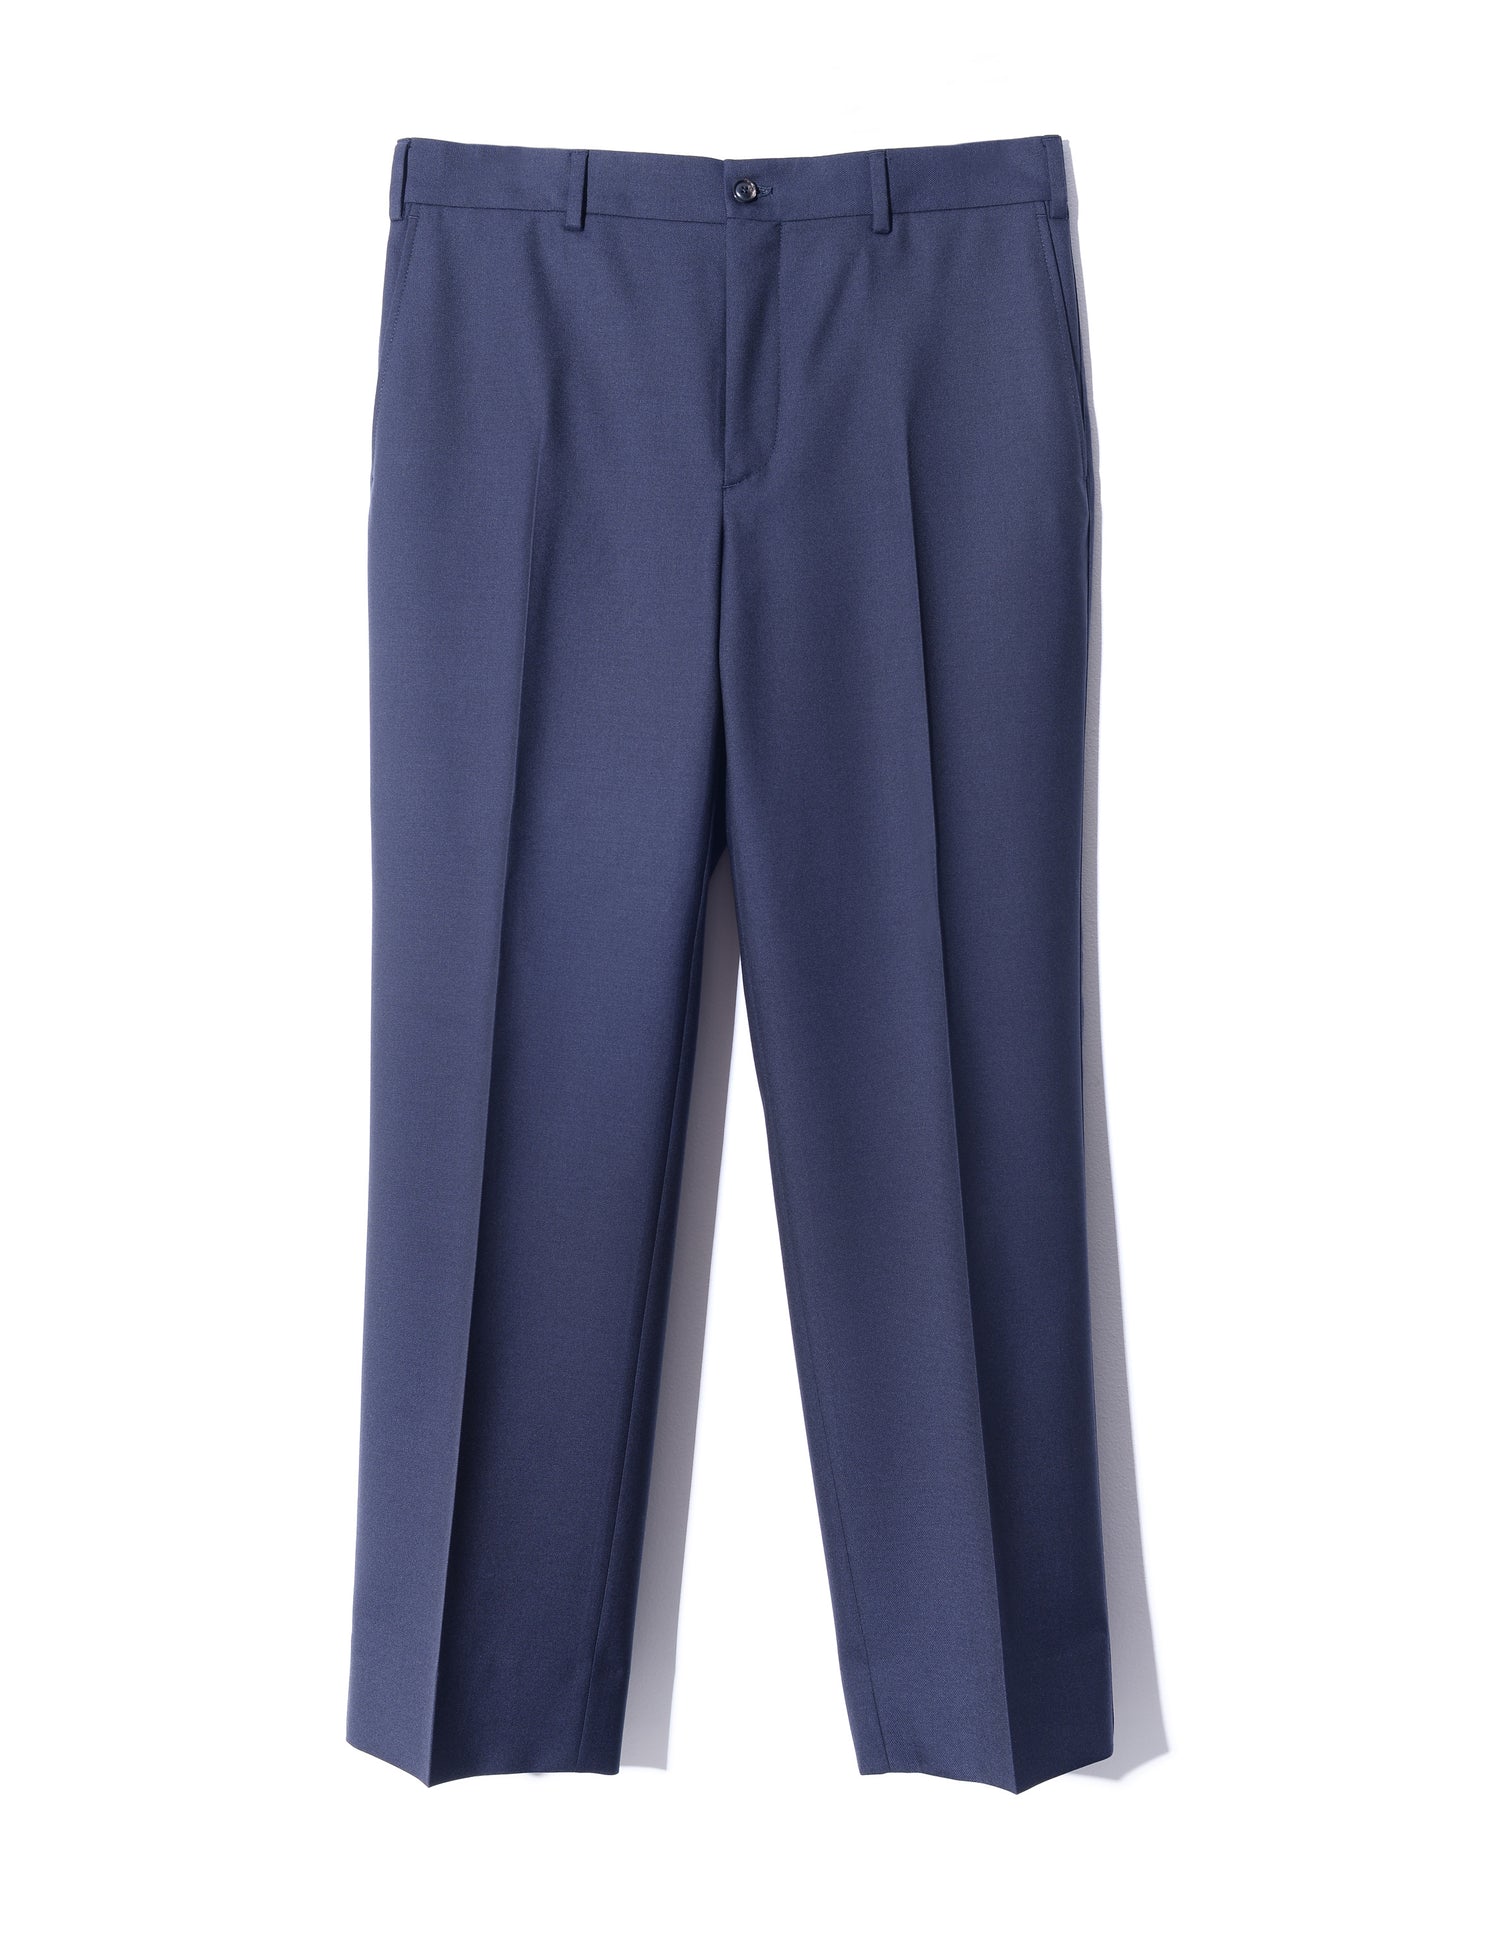 Brooklyn Tailors BKT36 Straight Leg Trouser in Sturdy Wool Twill - Midnight Blue full length flat shot